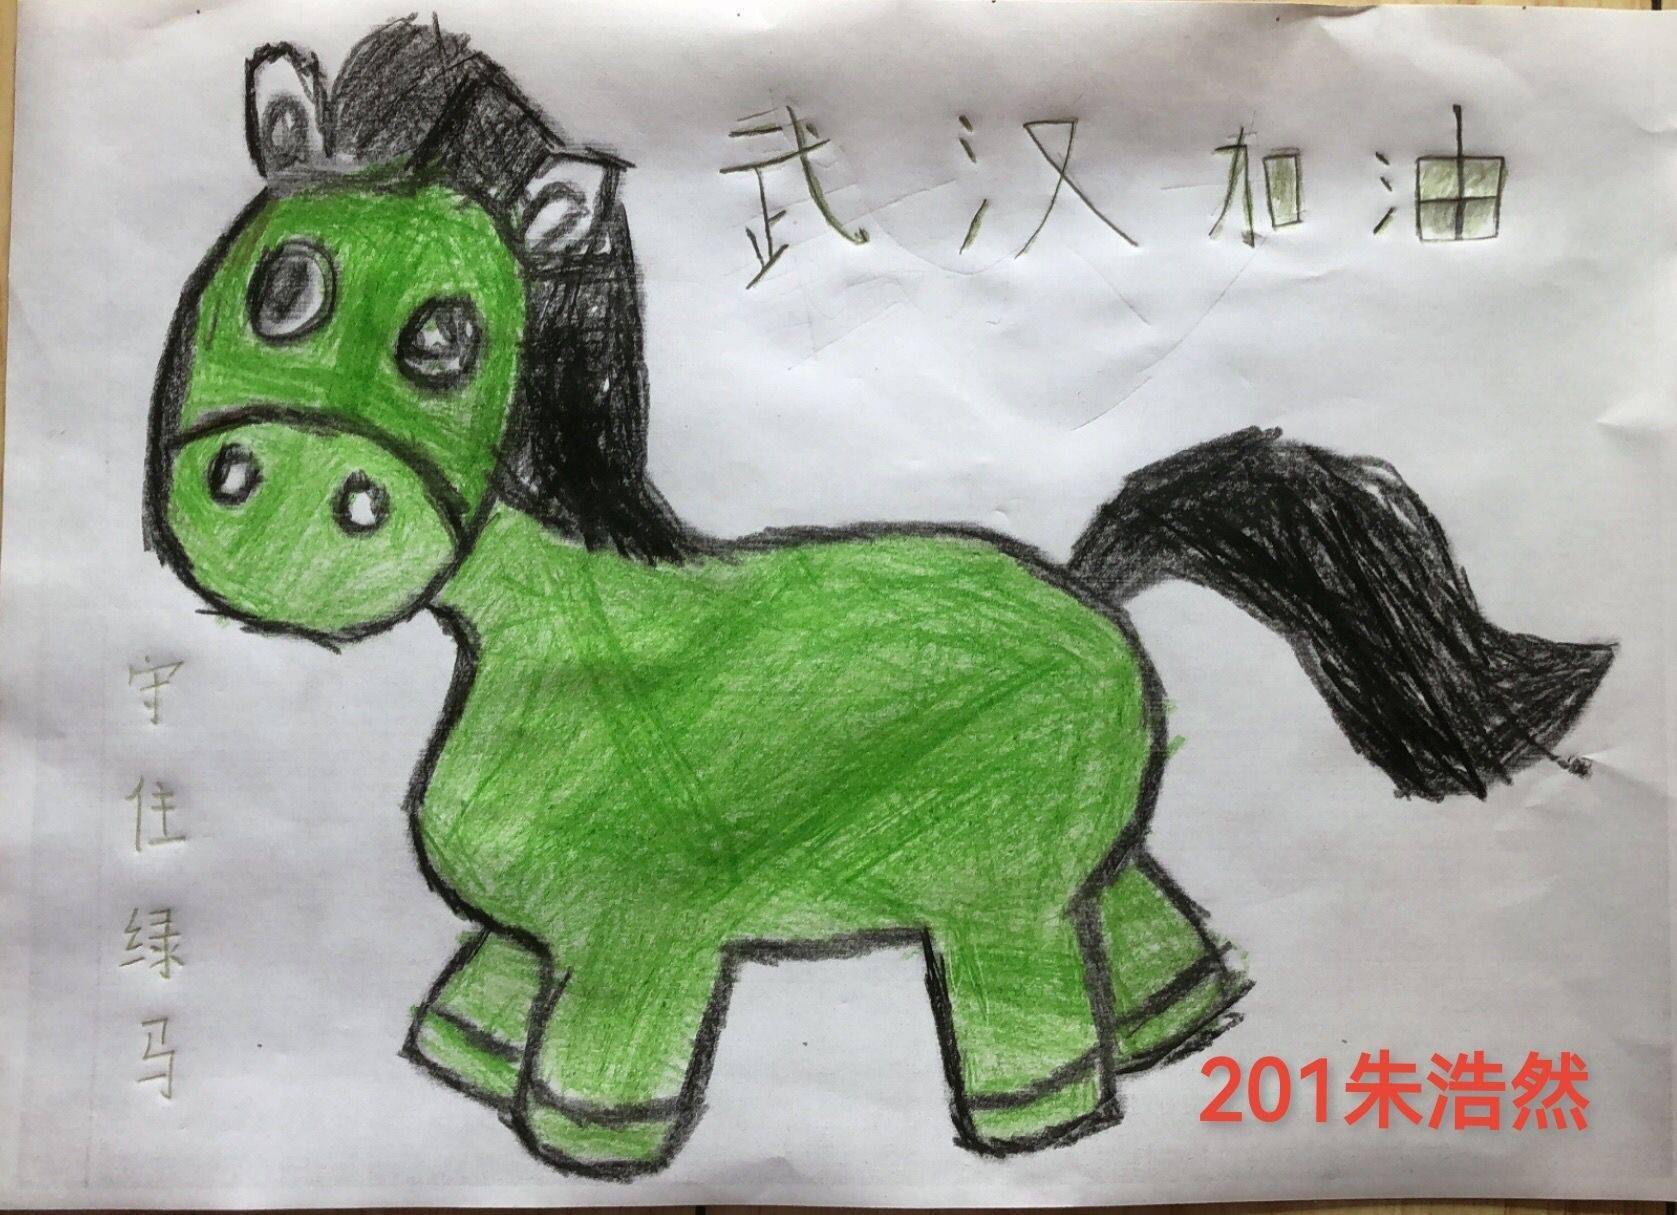 有创意!这群小学生画"绿马"送健康祝福